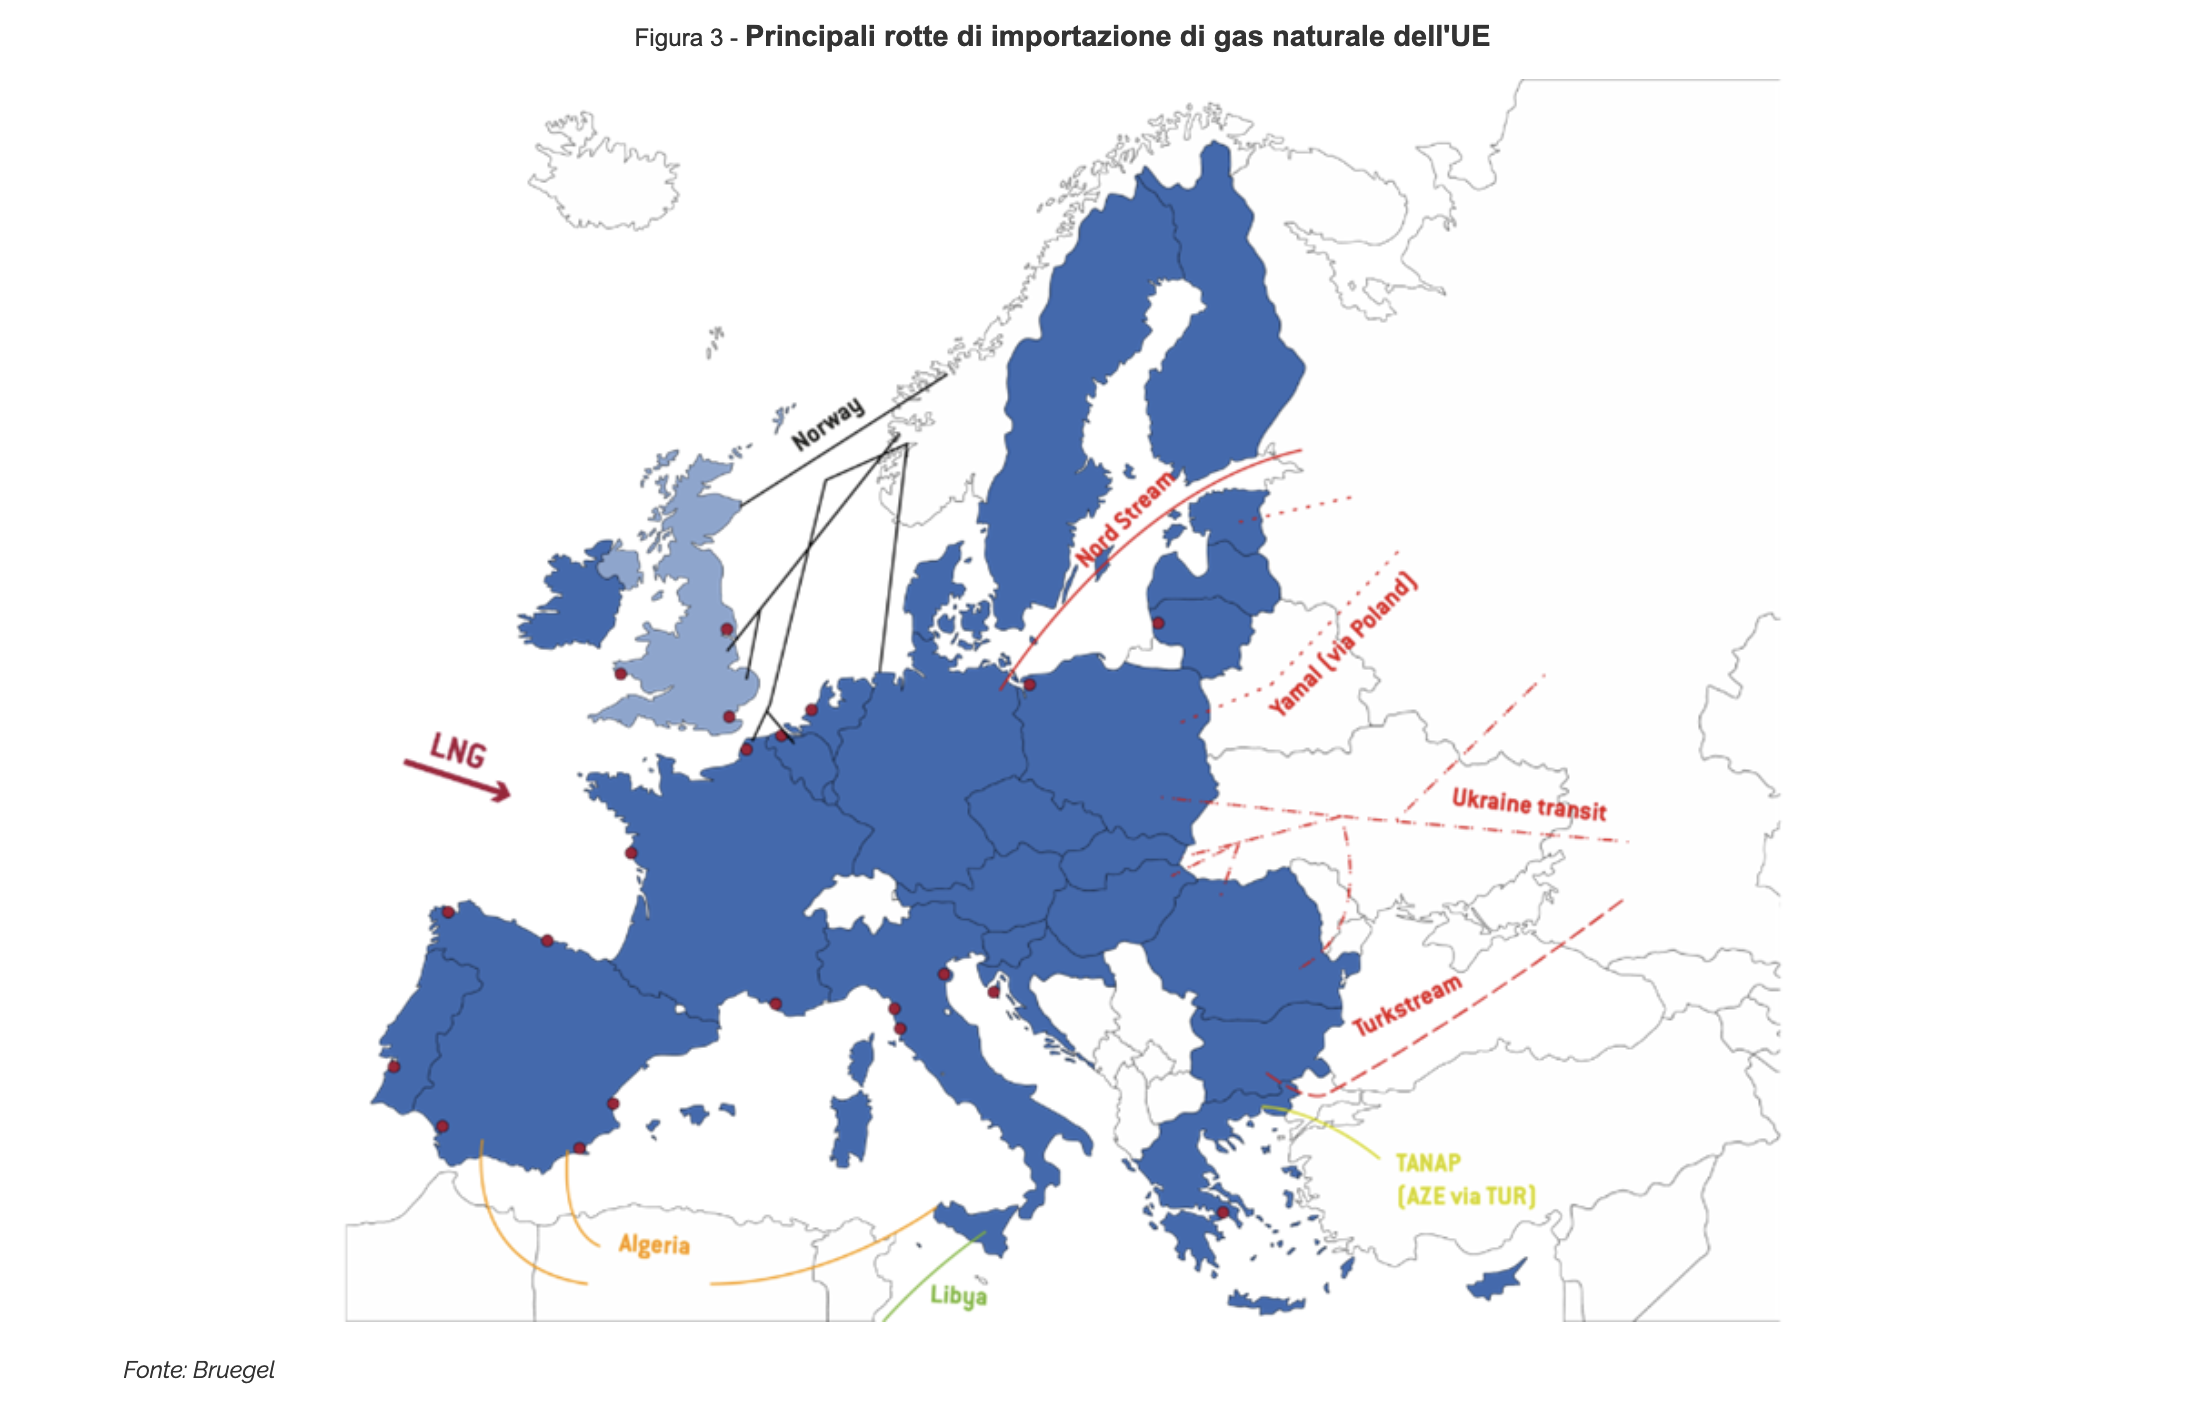 Principali rotte di importazione di gas naturale dell'UE